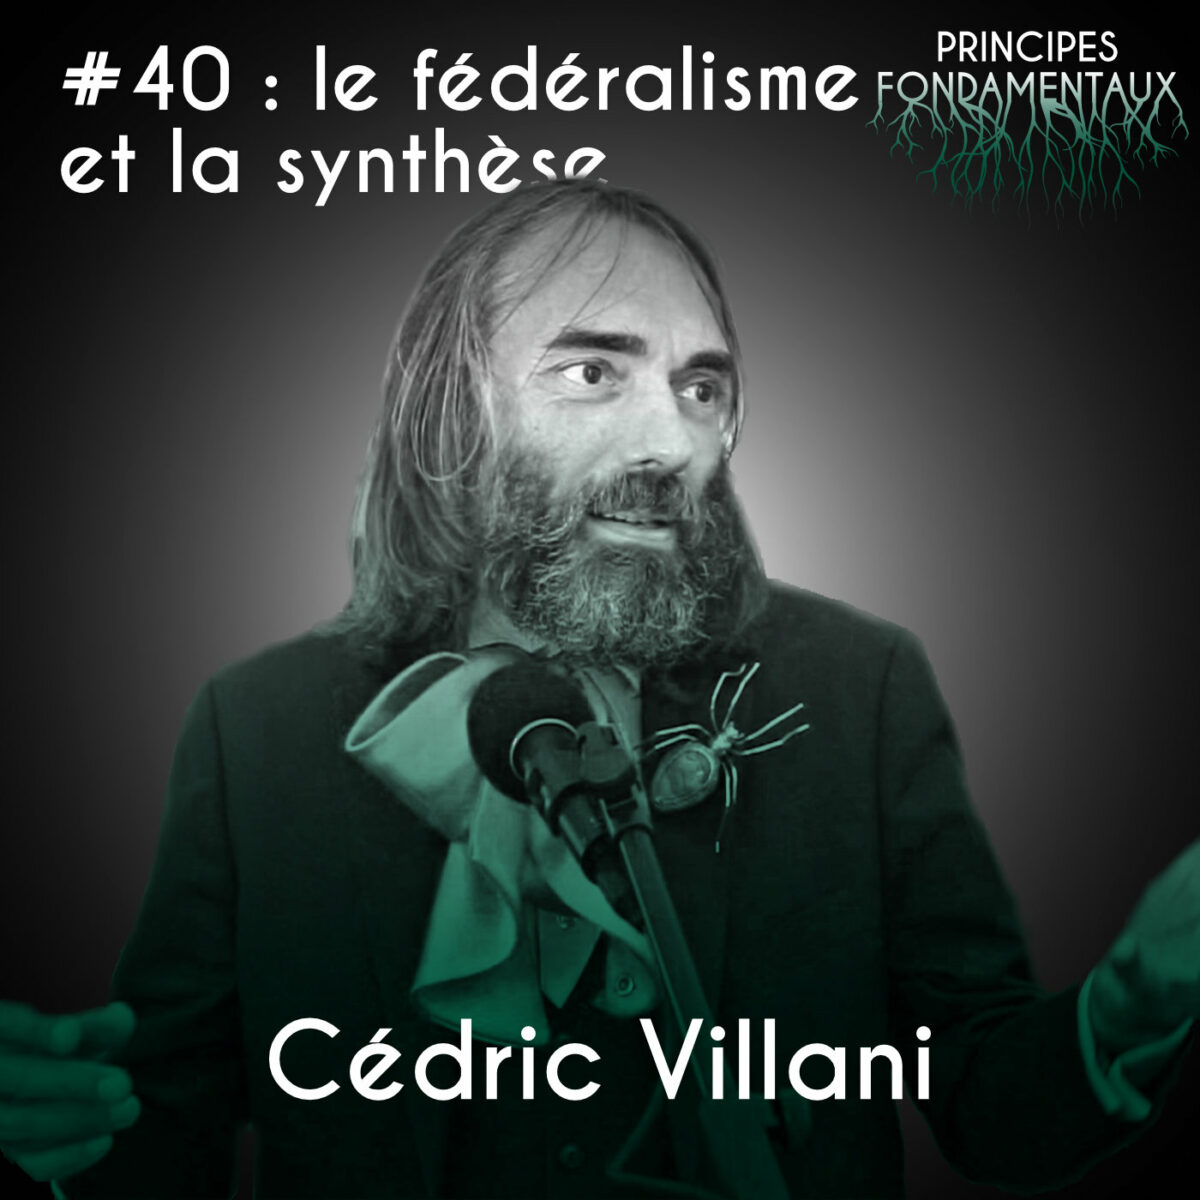 Couverture Podcast #40 : Cédric Villani - le fédéralisme et la synthèse